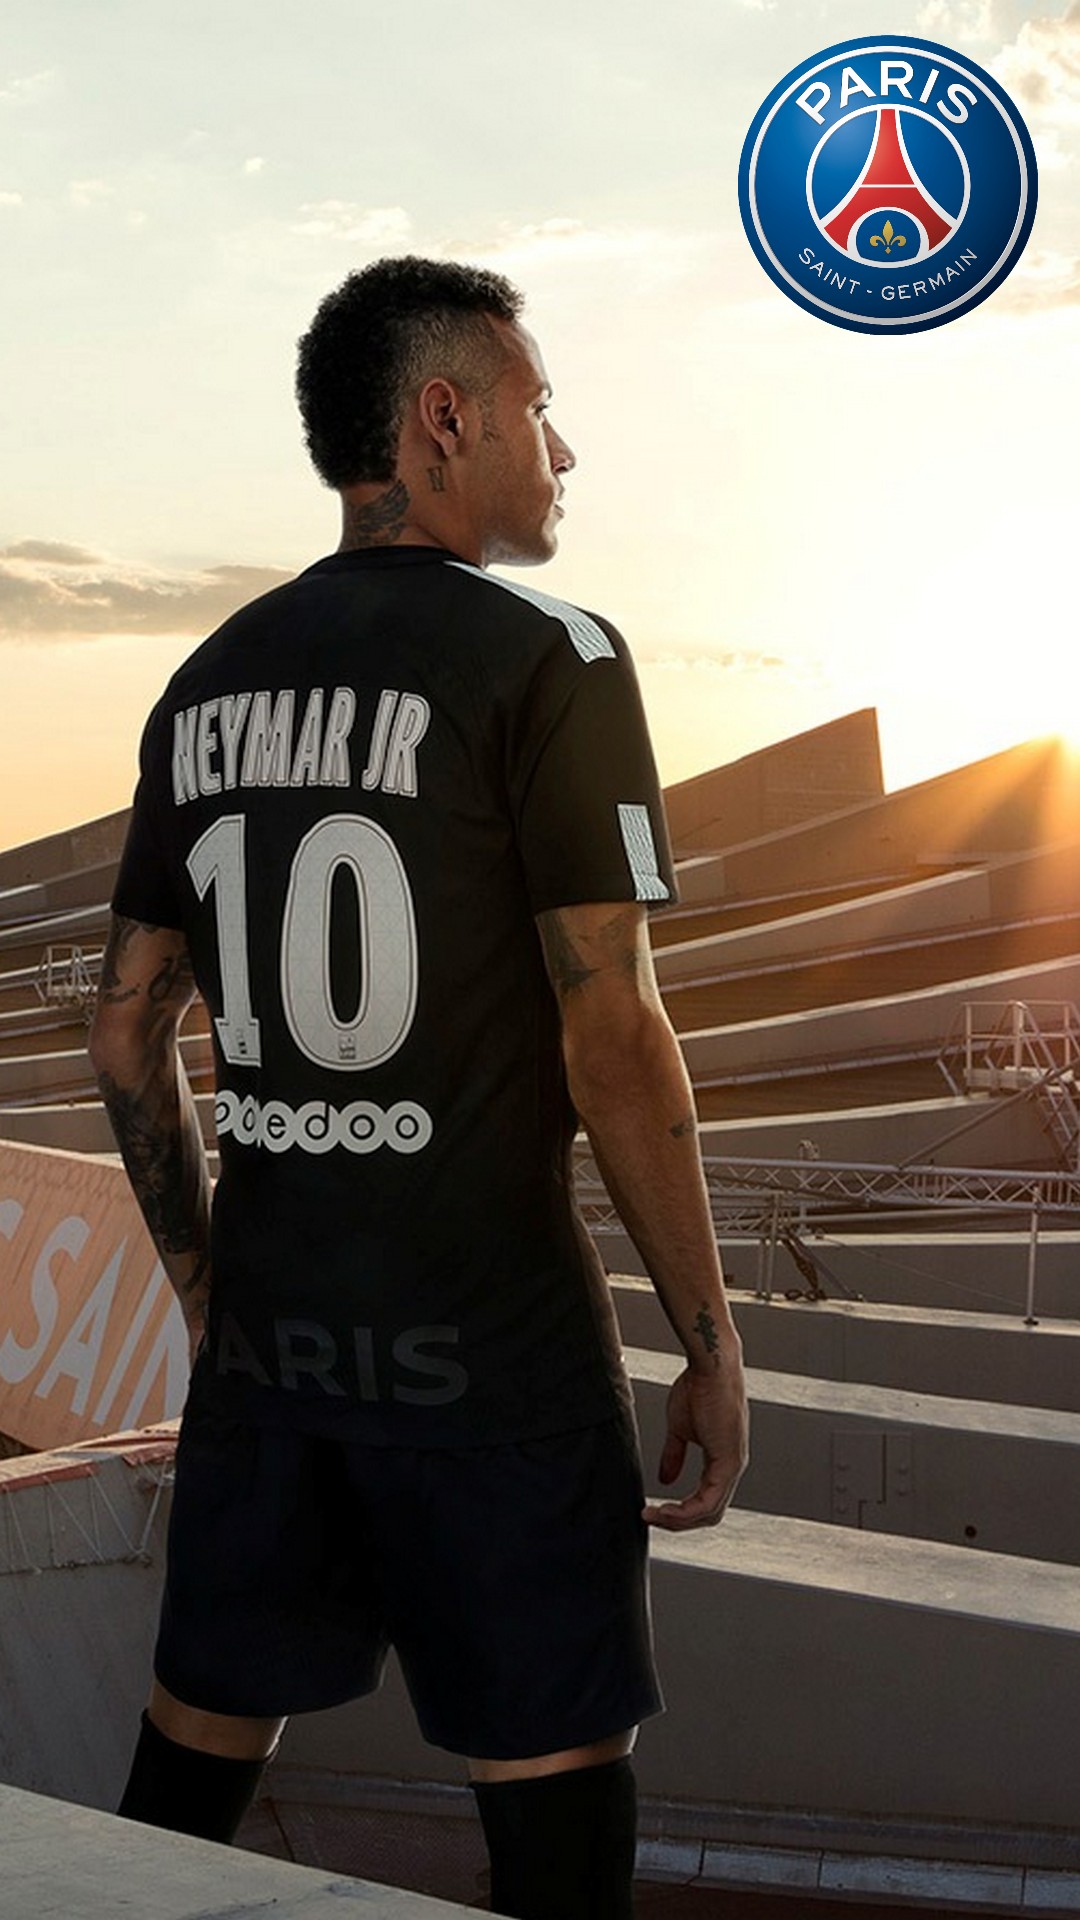 neymar wallpaper iphone,jersey,sportswear,t shirt,uniform,player